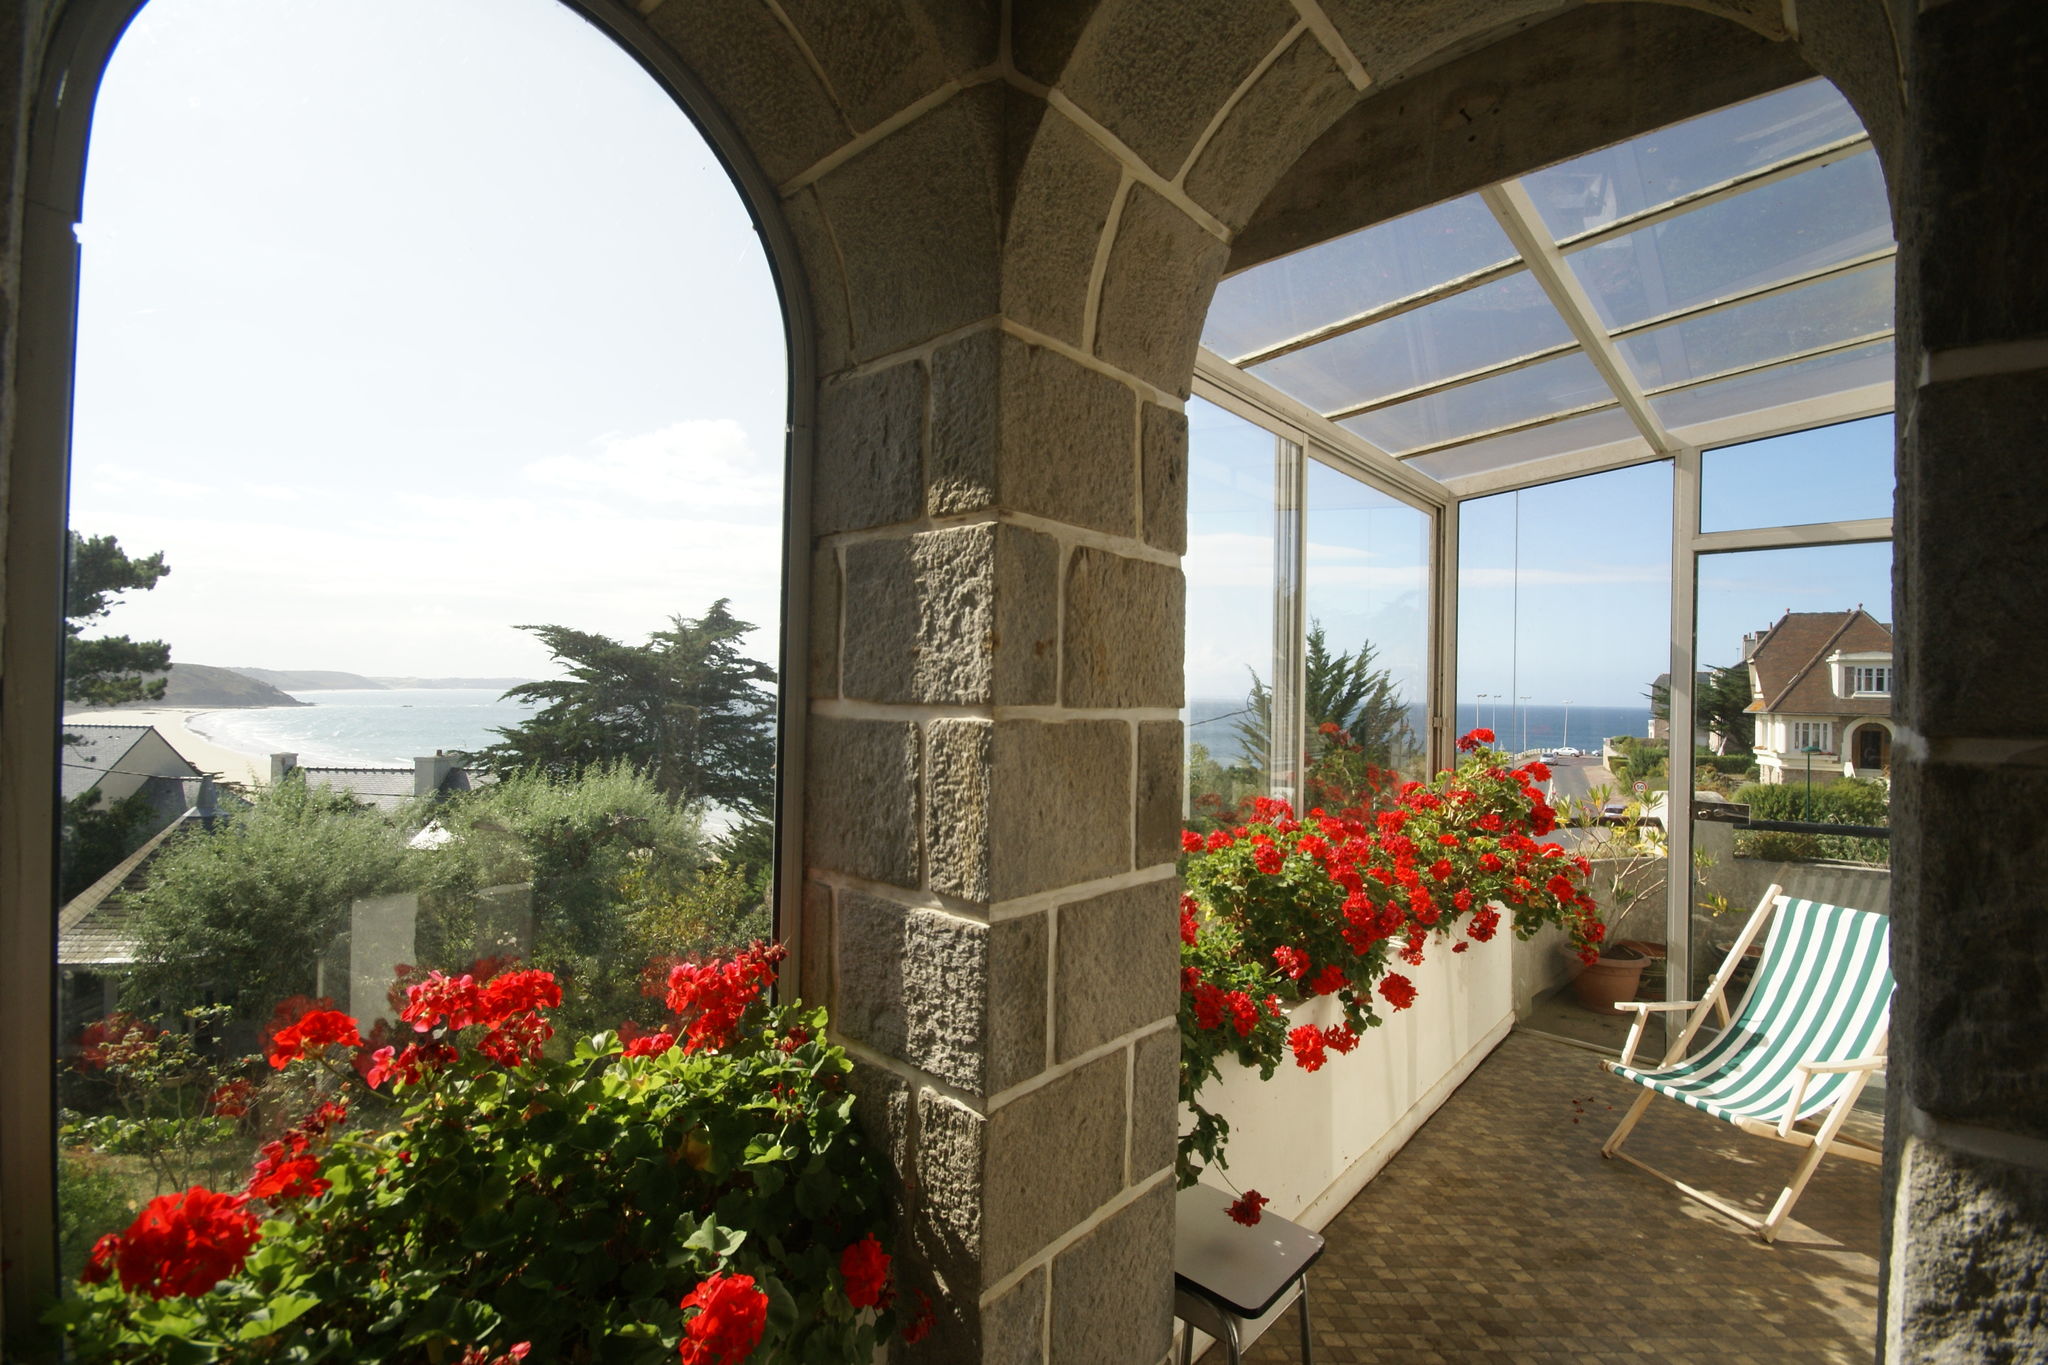 Magnifique maison de vacances avec vue sur mer à Erquy